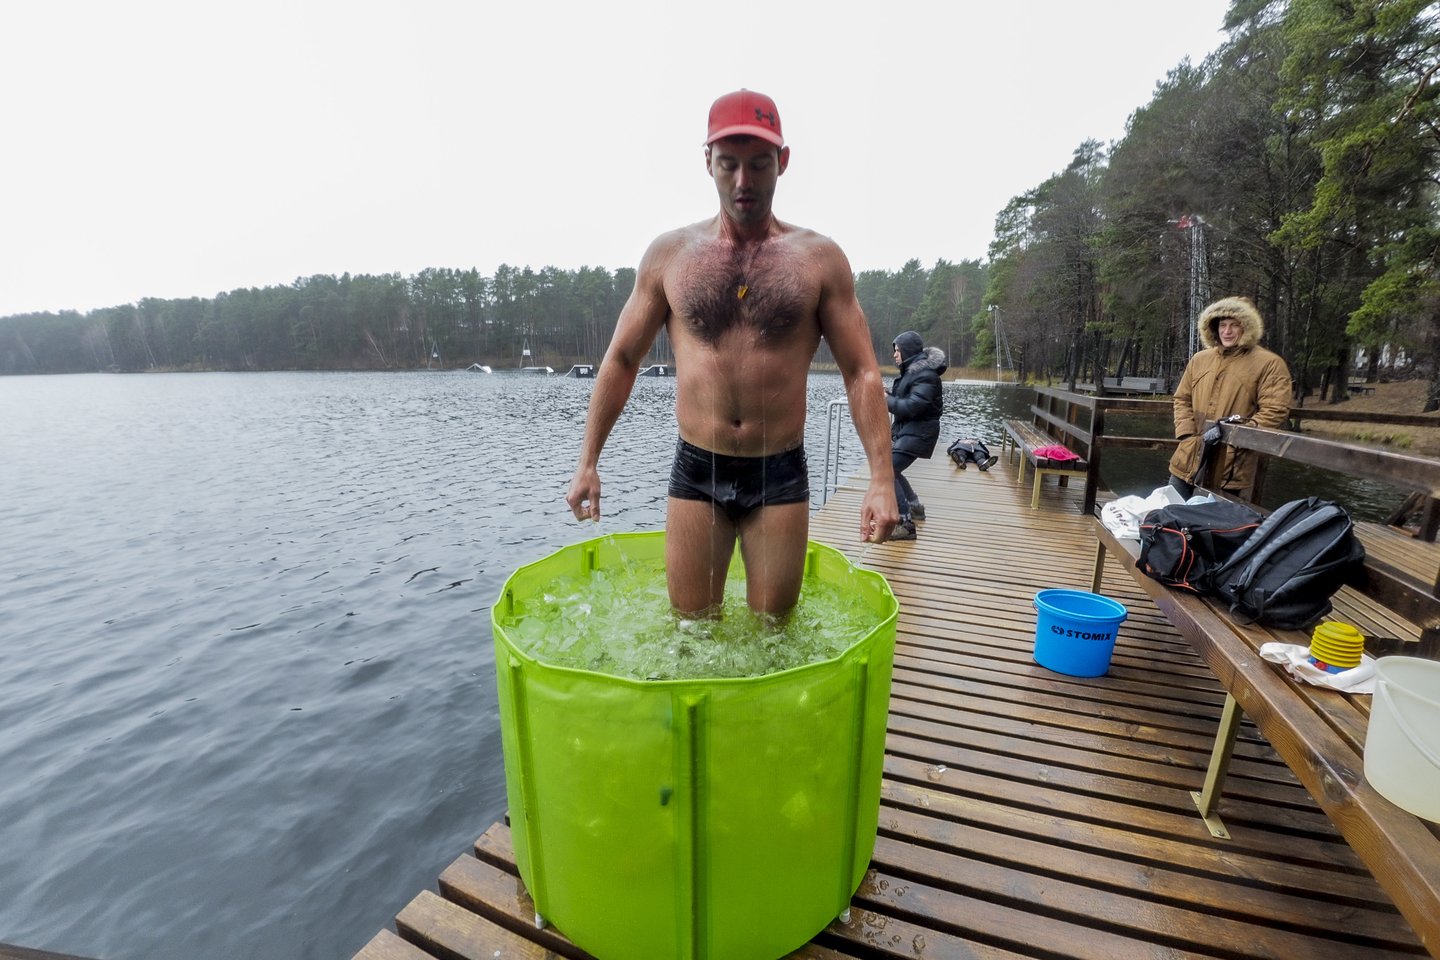 Savaitgaliais A.Giliasevičius prie ežero vežasi specialų baseiną ir lenda į susmulkintą ledą, kai jo temperatūra būna nulis laipsnių ar net šiek tiek žemiau nulio.<br>V.Ščiavinsko nuotr.